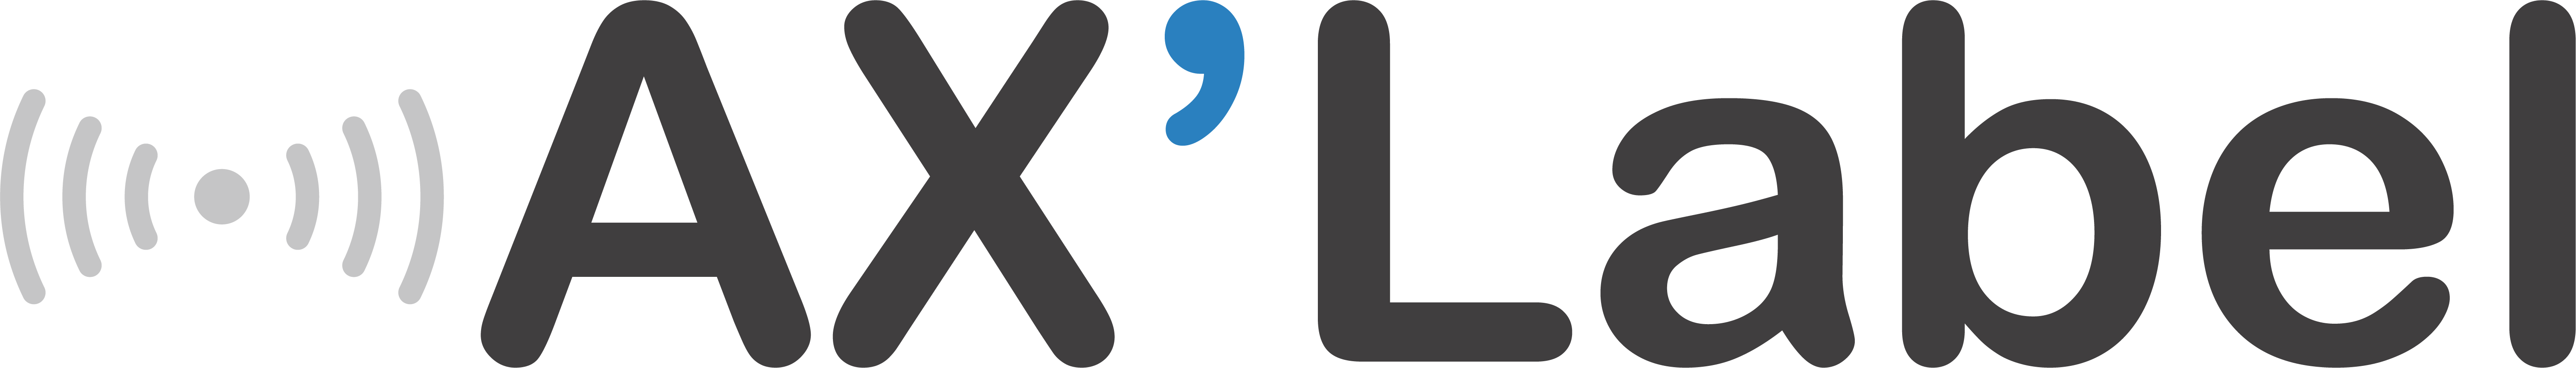 Axlabel logo Png